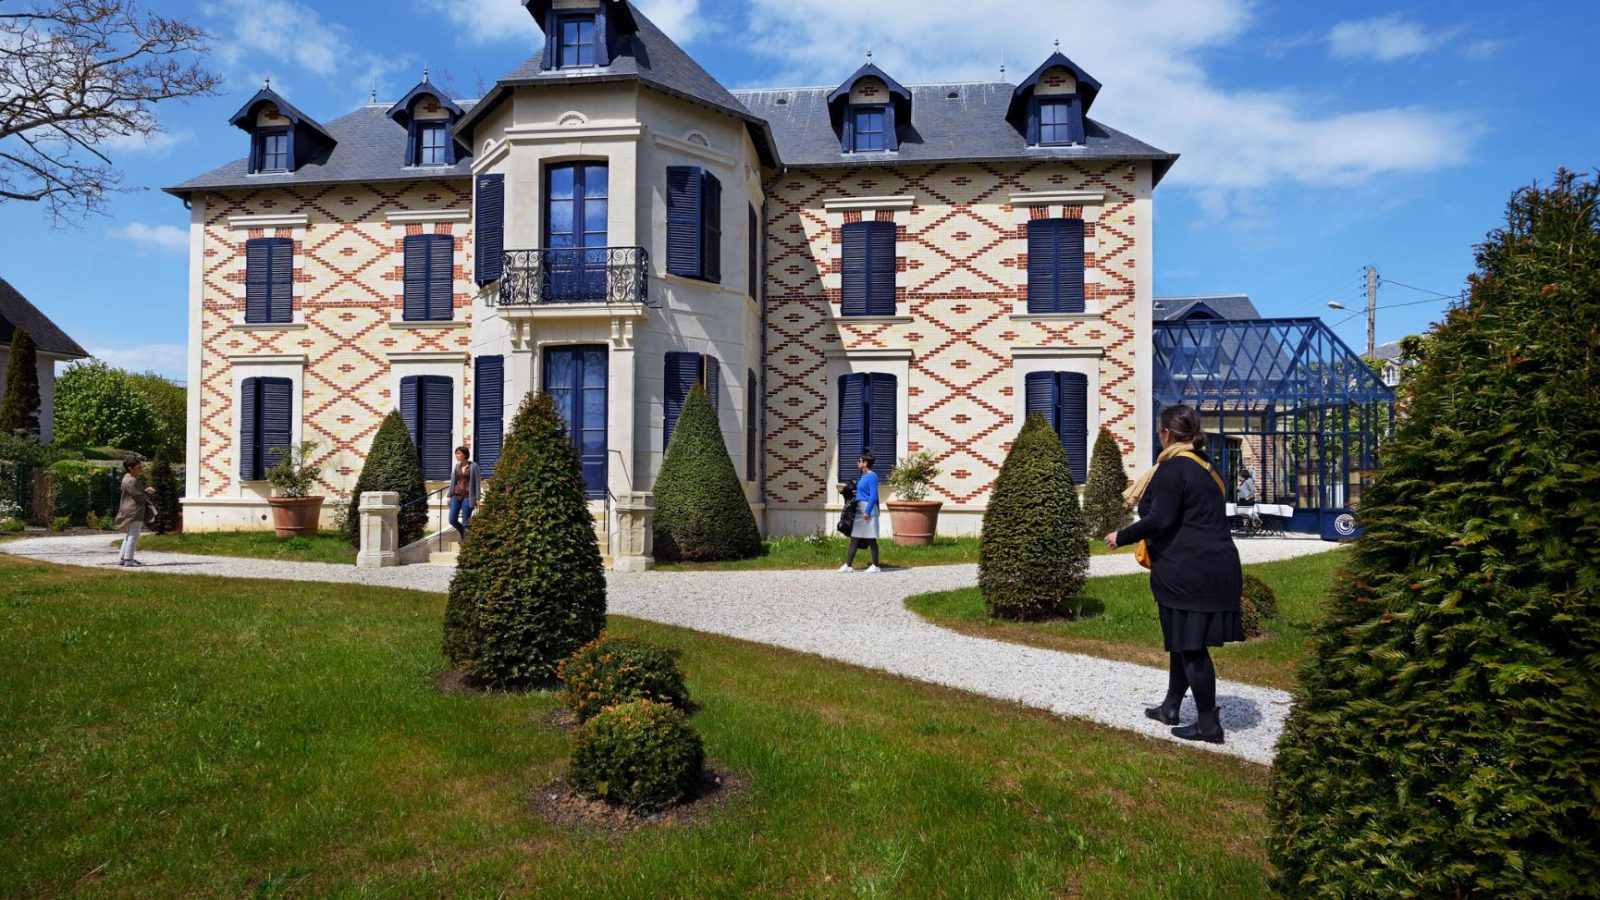 The Villa du Temps Retrouvé in Cabourg - Normandy Tourism, France